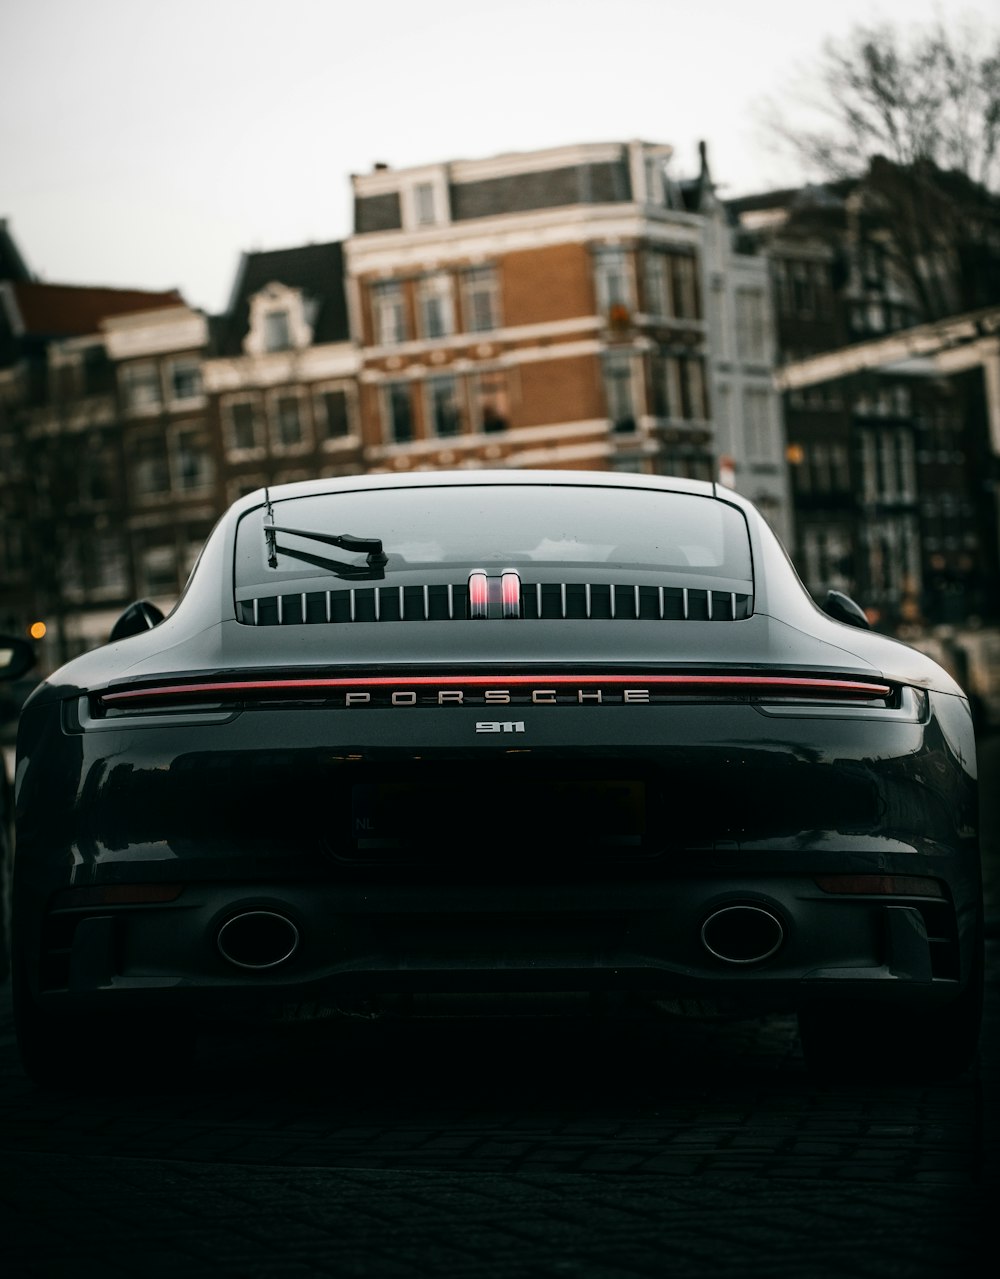 Porsche 911 nera parcheggiata in strada durante il giorno